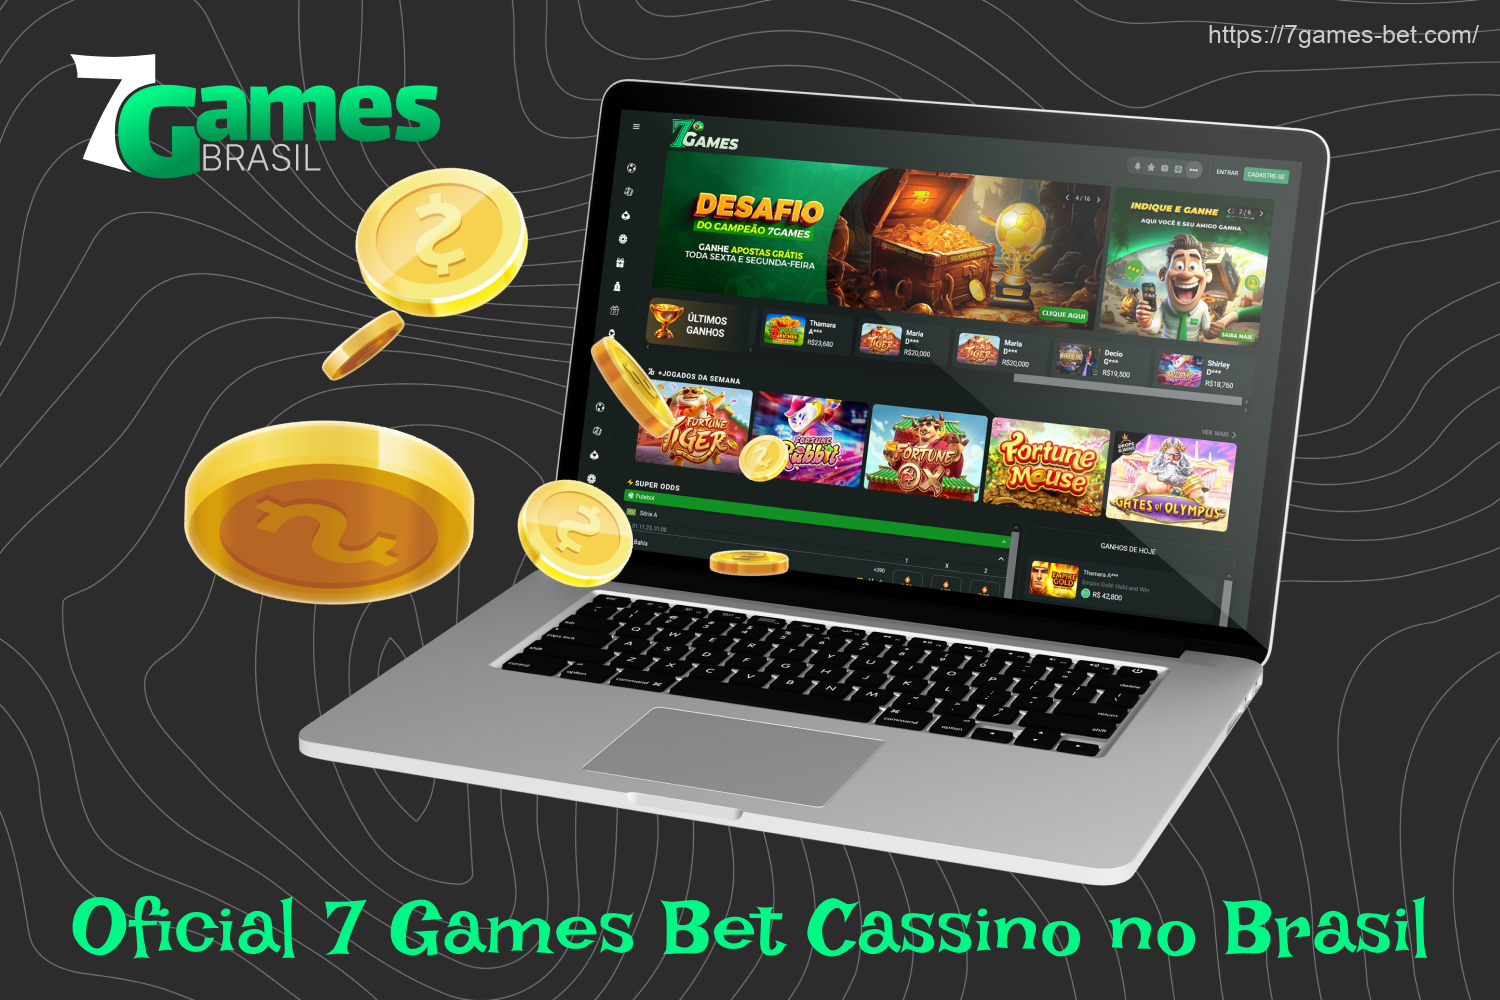 O 7Games focado no entretenimento de cassino, fazendo parcerias com os maiores provedores e dando aos usuários brasileiros acesso a milhares de jogos de cassino para todos os gostos